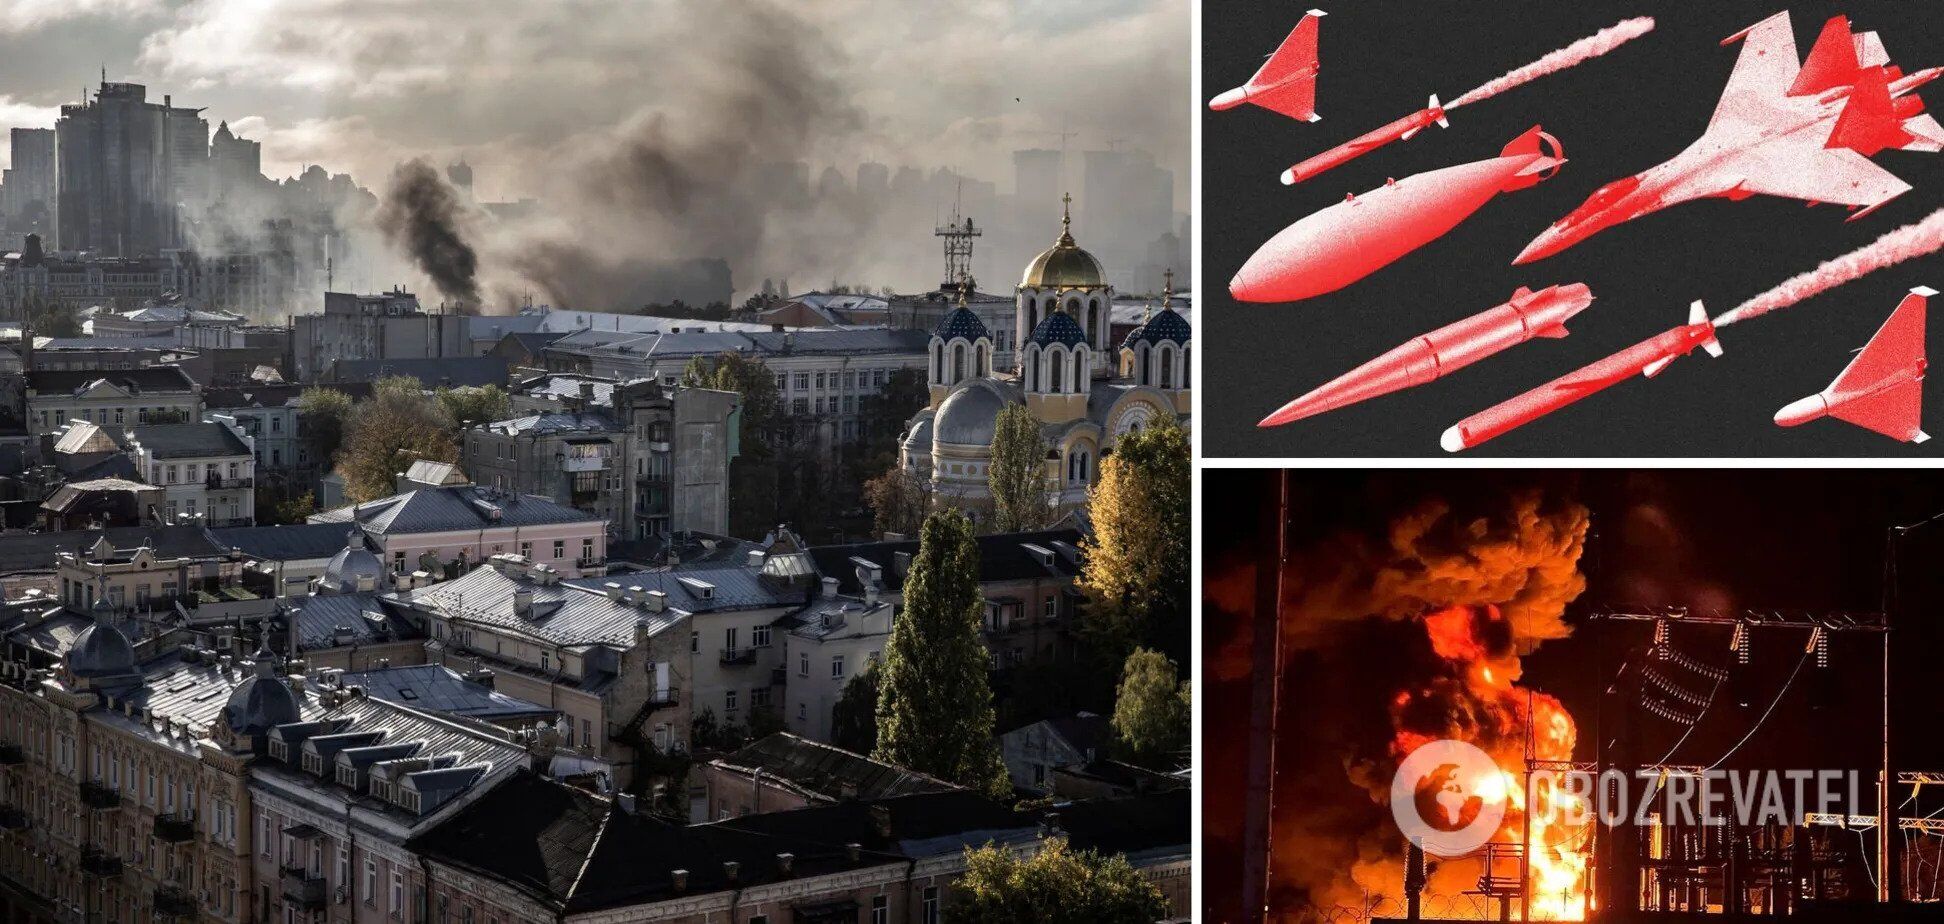 "Враг ищет уязвимые места": Скибицкий дал прогноз, будет ли Россия массированно бить ракетами по Украине осенью